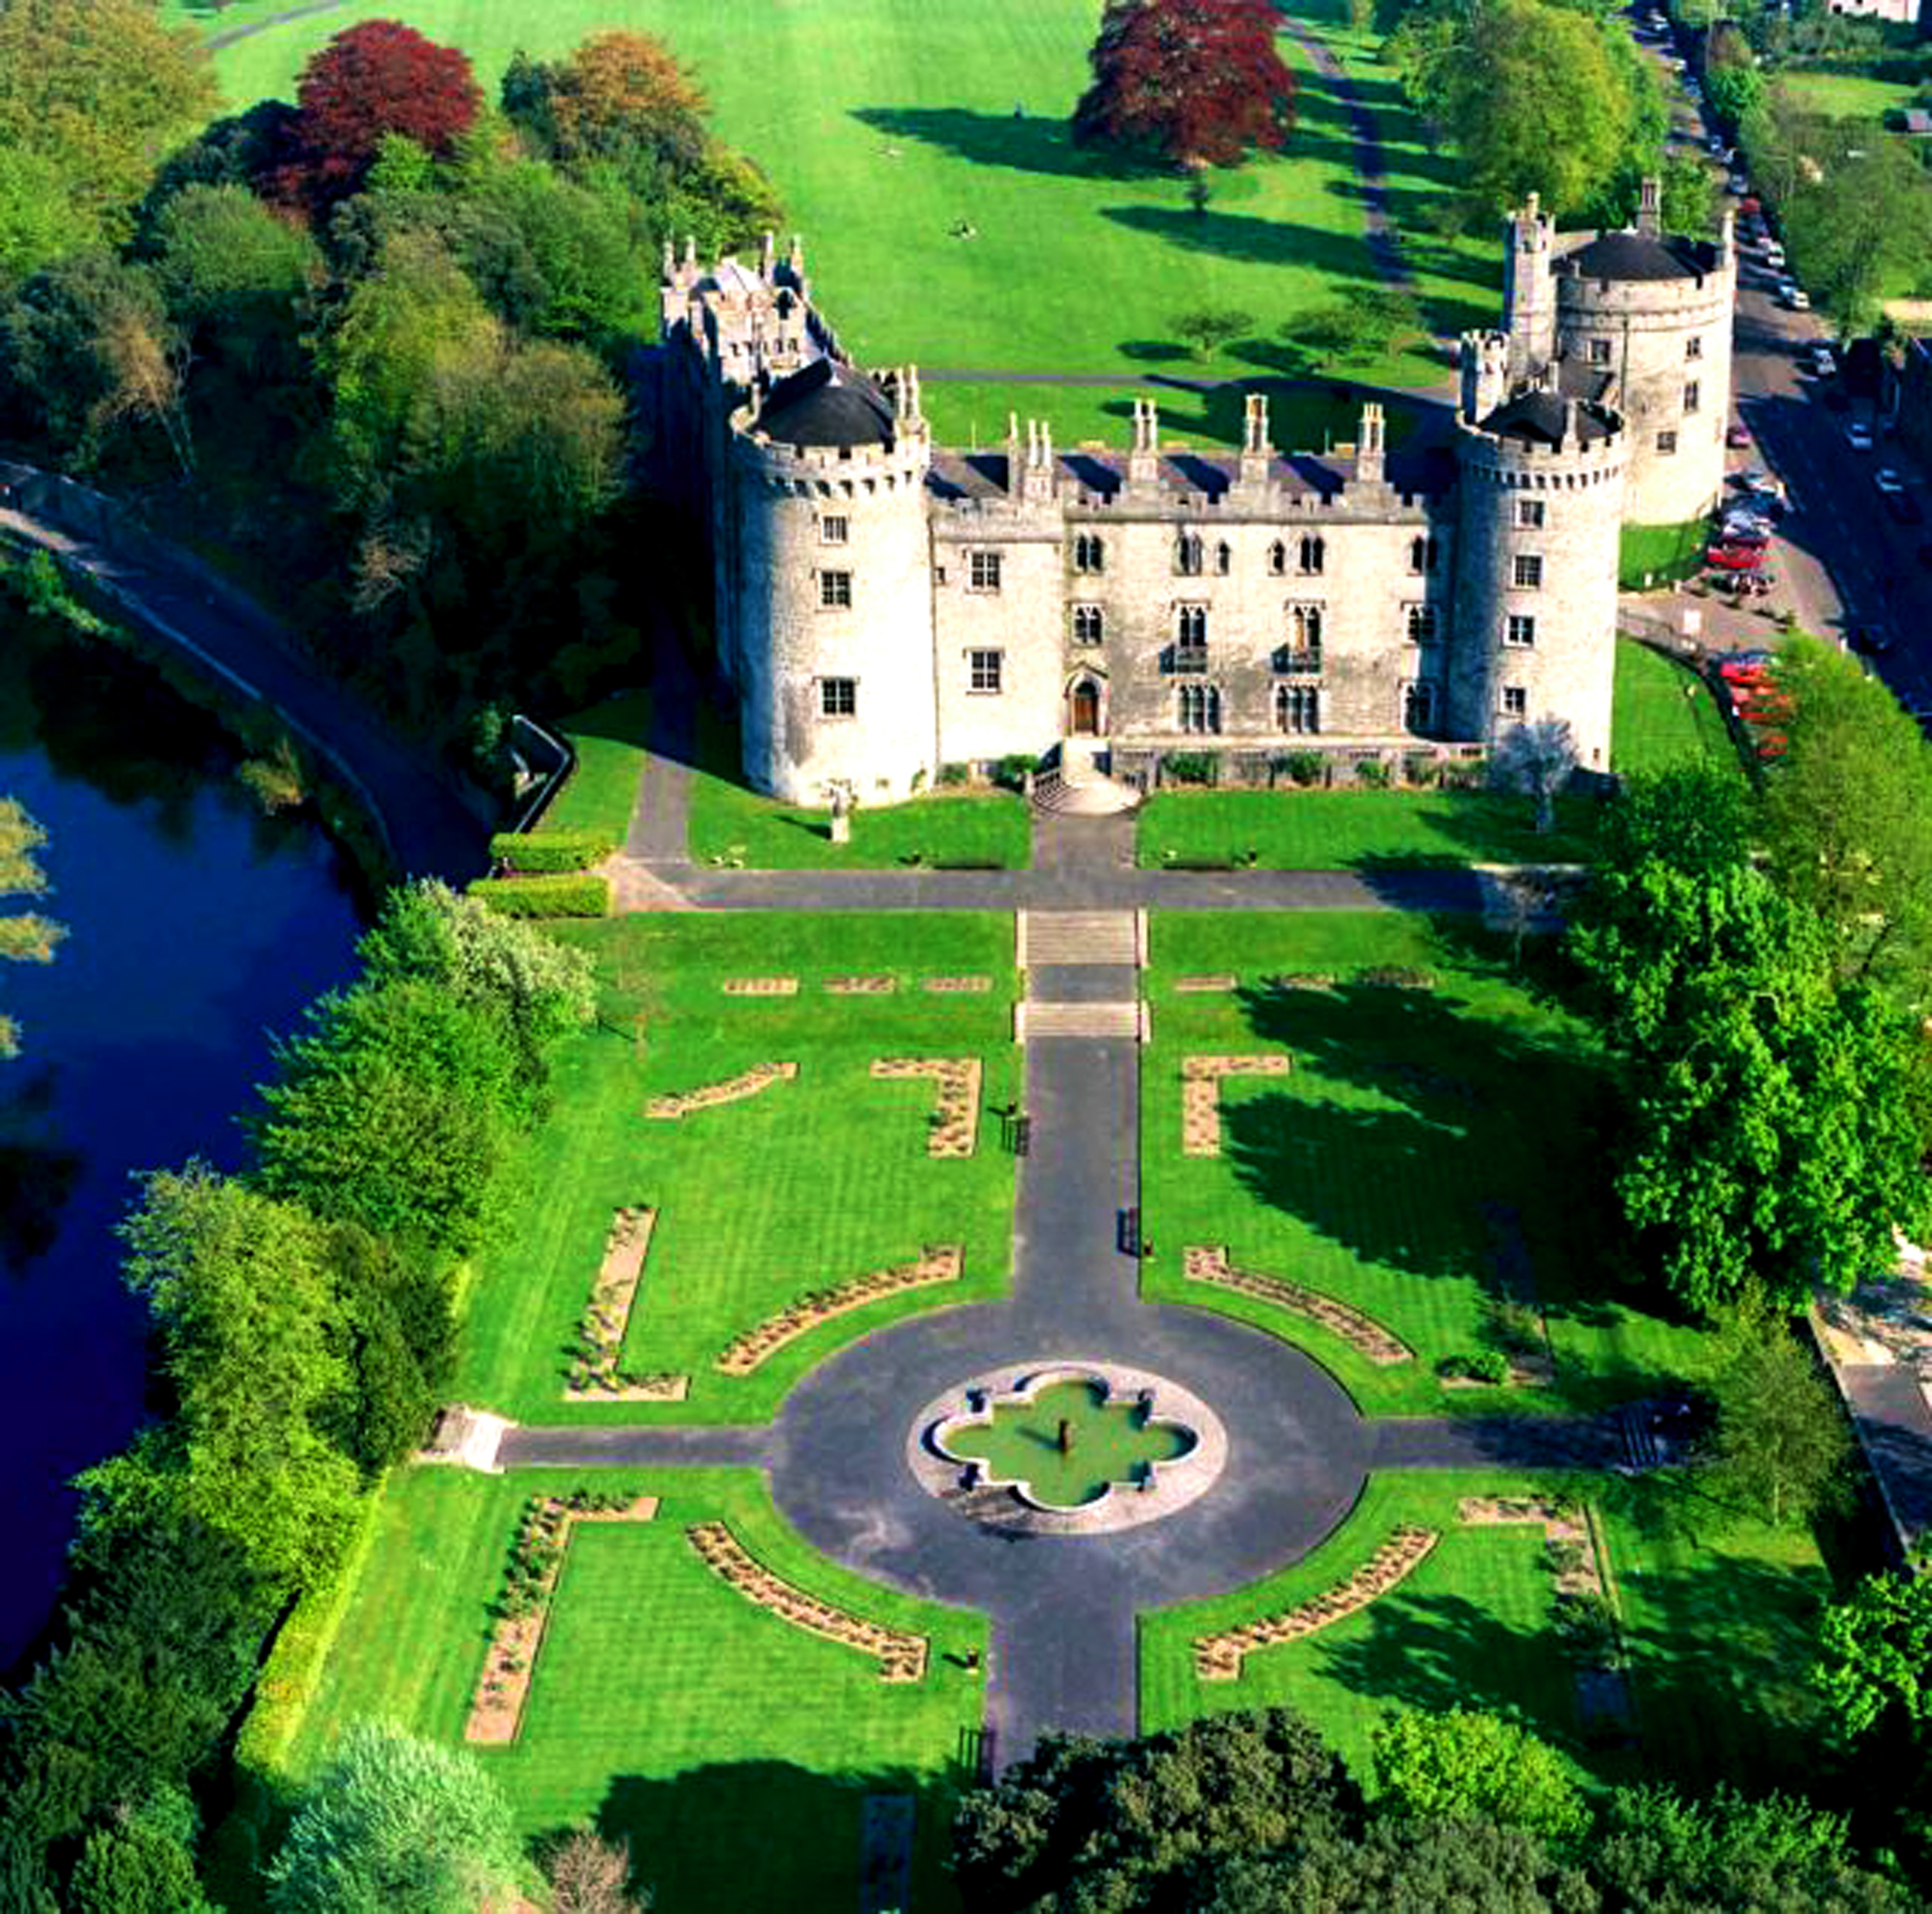 Kilkenny Castle and Parklands